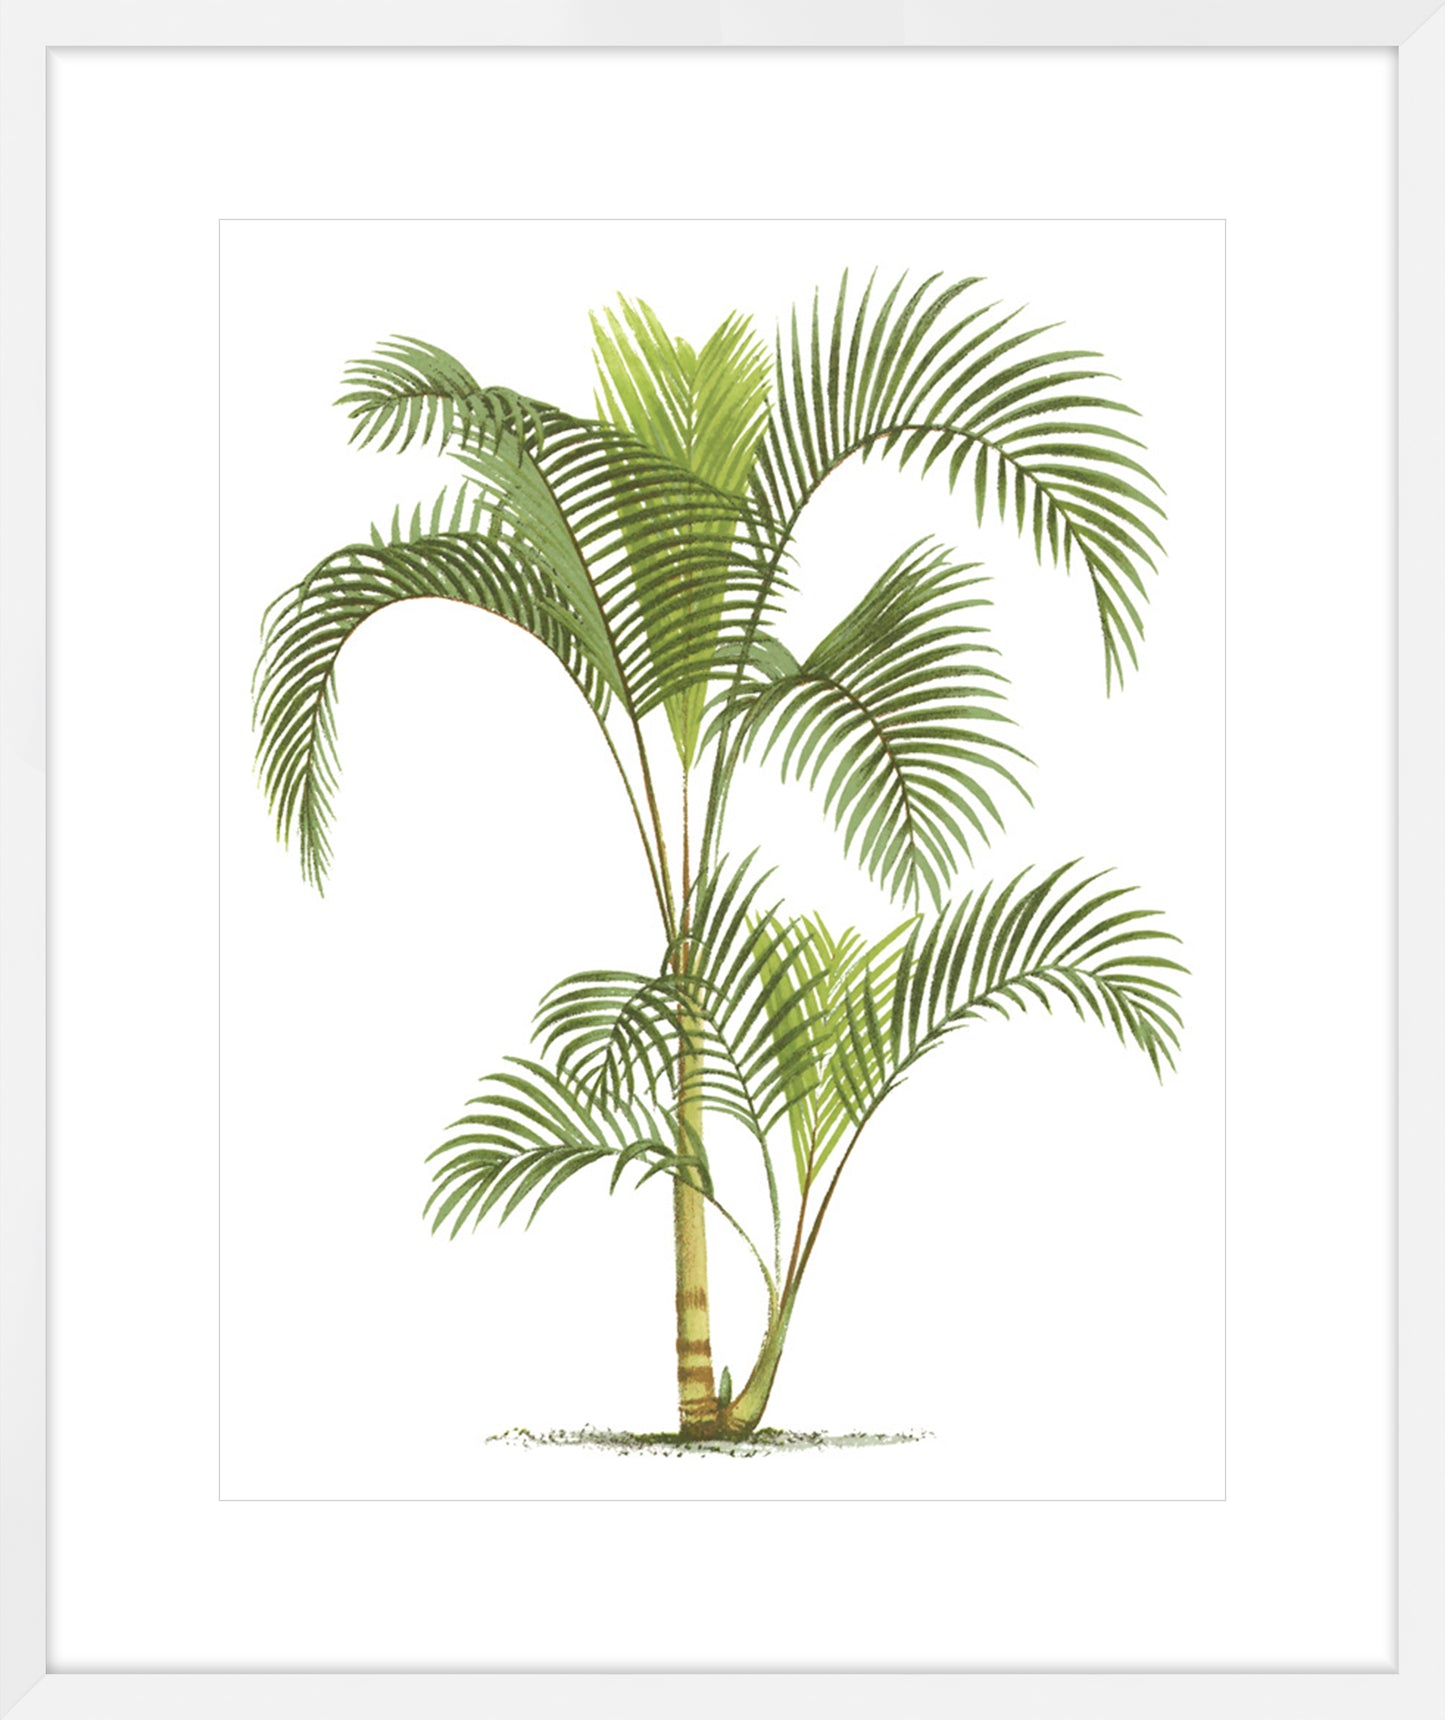 Coastal Palm IV